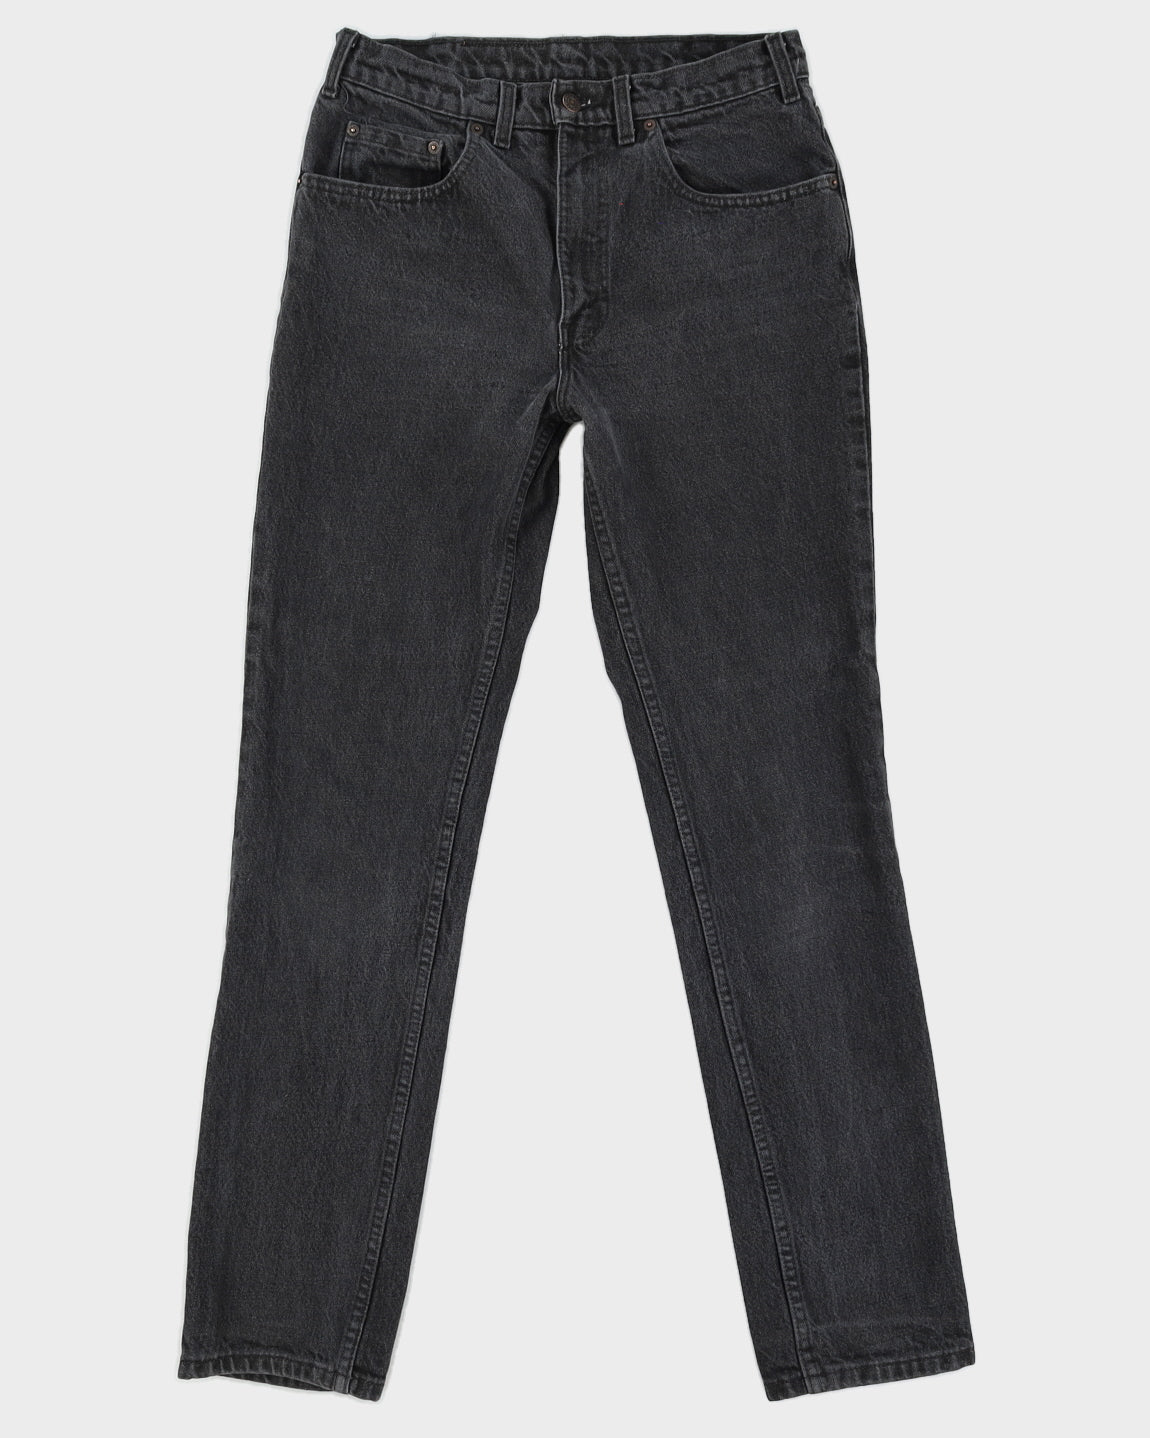 Vintage 90s Levi's Black Jeans - W31 L32